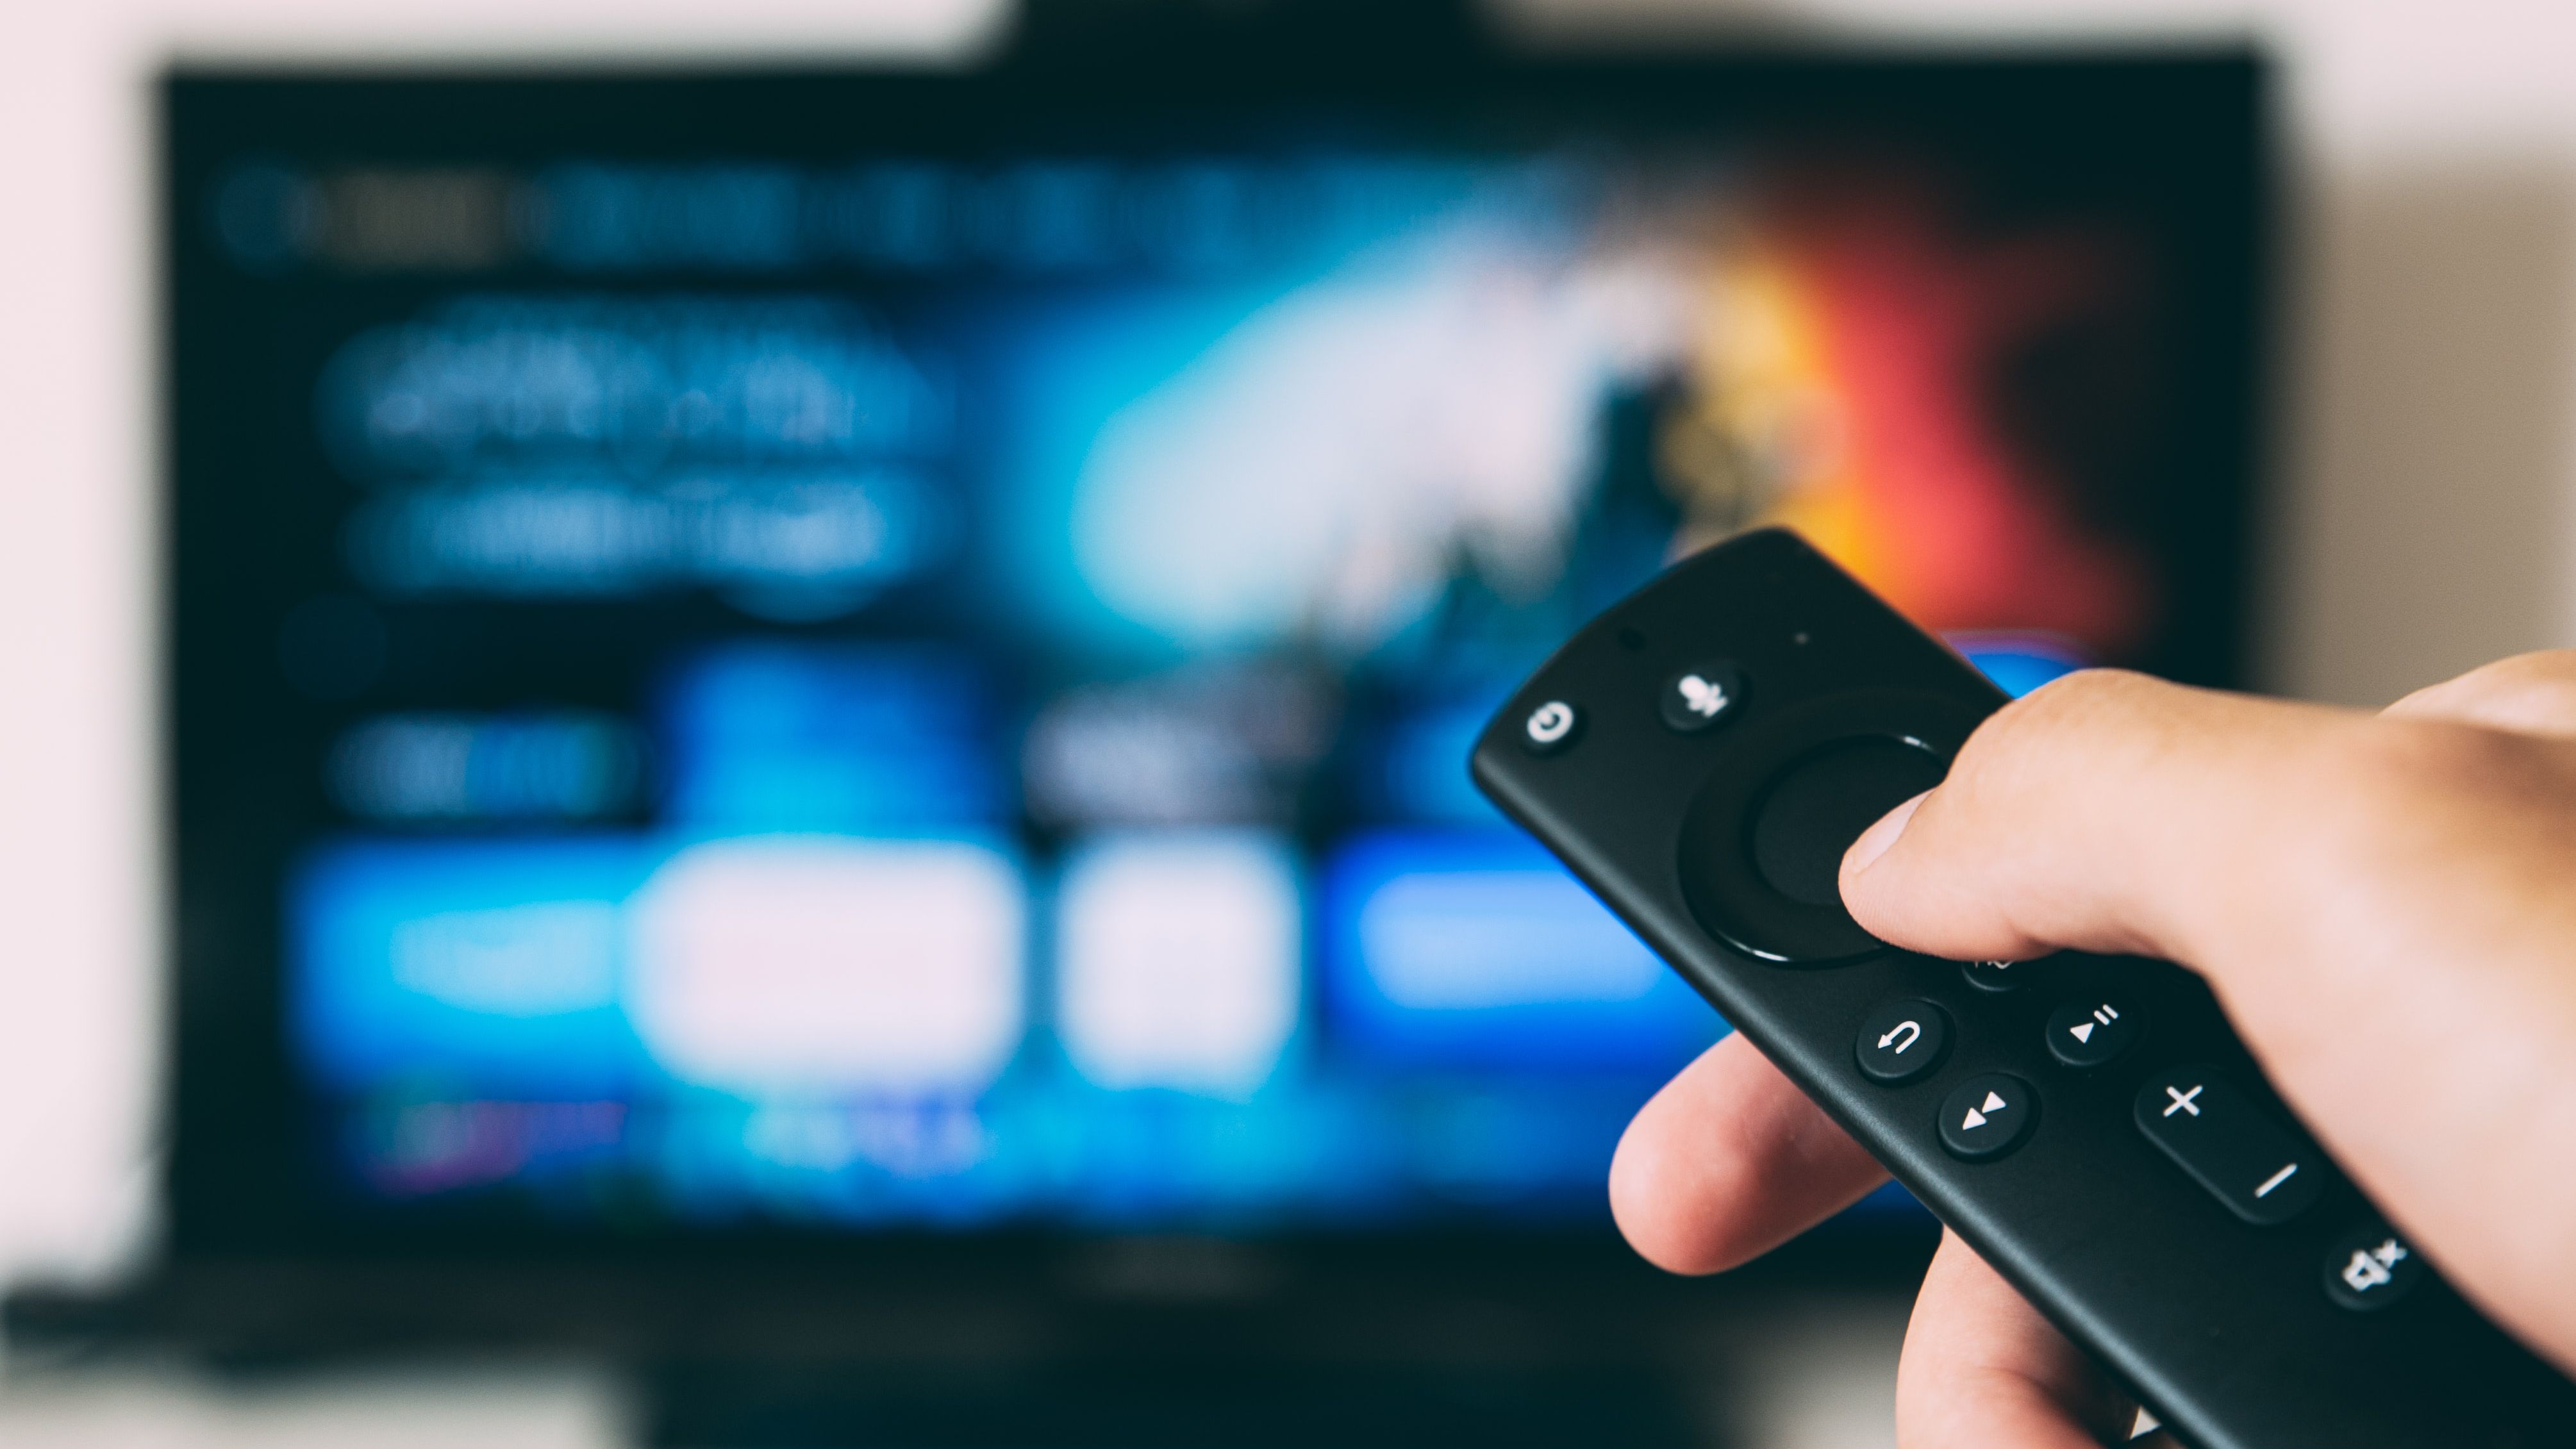 Netflix e mais: veja como cancelar assinatura de streaming de vídeo